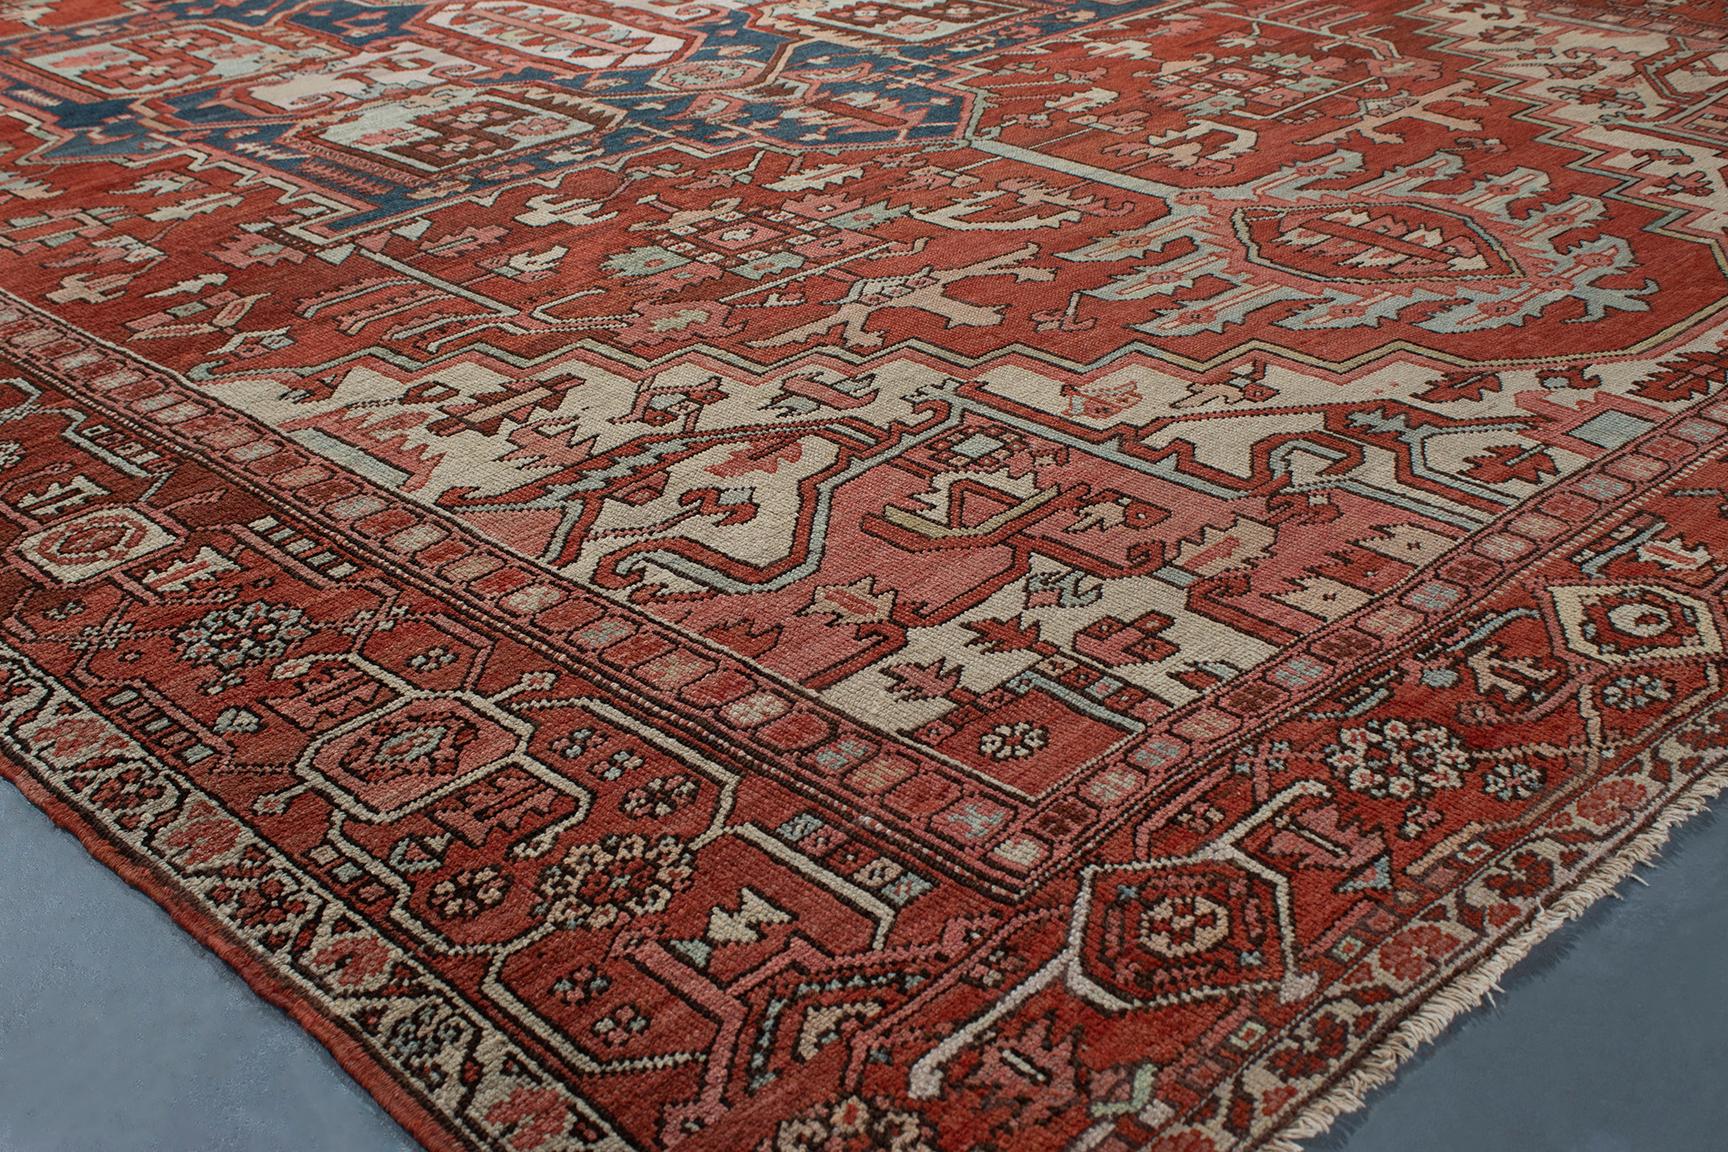 Les tapis anciens Serapi sont originaires du nord-ouest de l'Iran et se caractérisent par un tissage plus fin avec des motifs à grande échelle, placés de manière spacieuse. La majorité des Sérapis antiques ont des médaillons, mais on peut aussi les